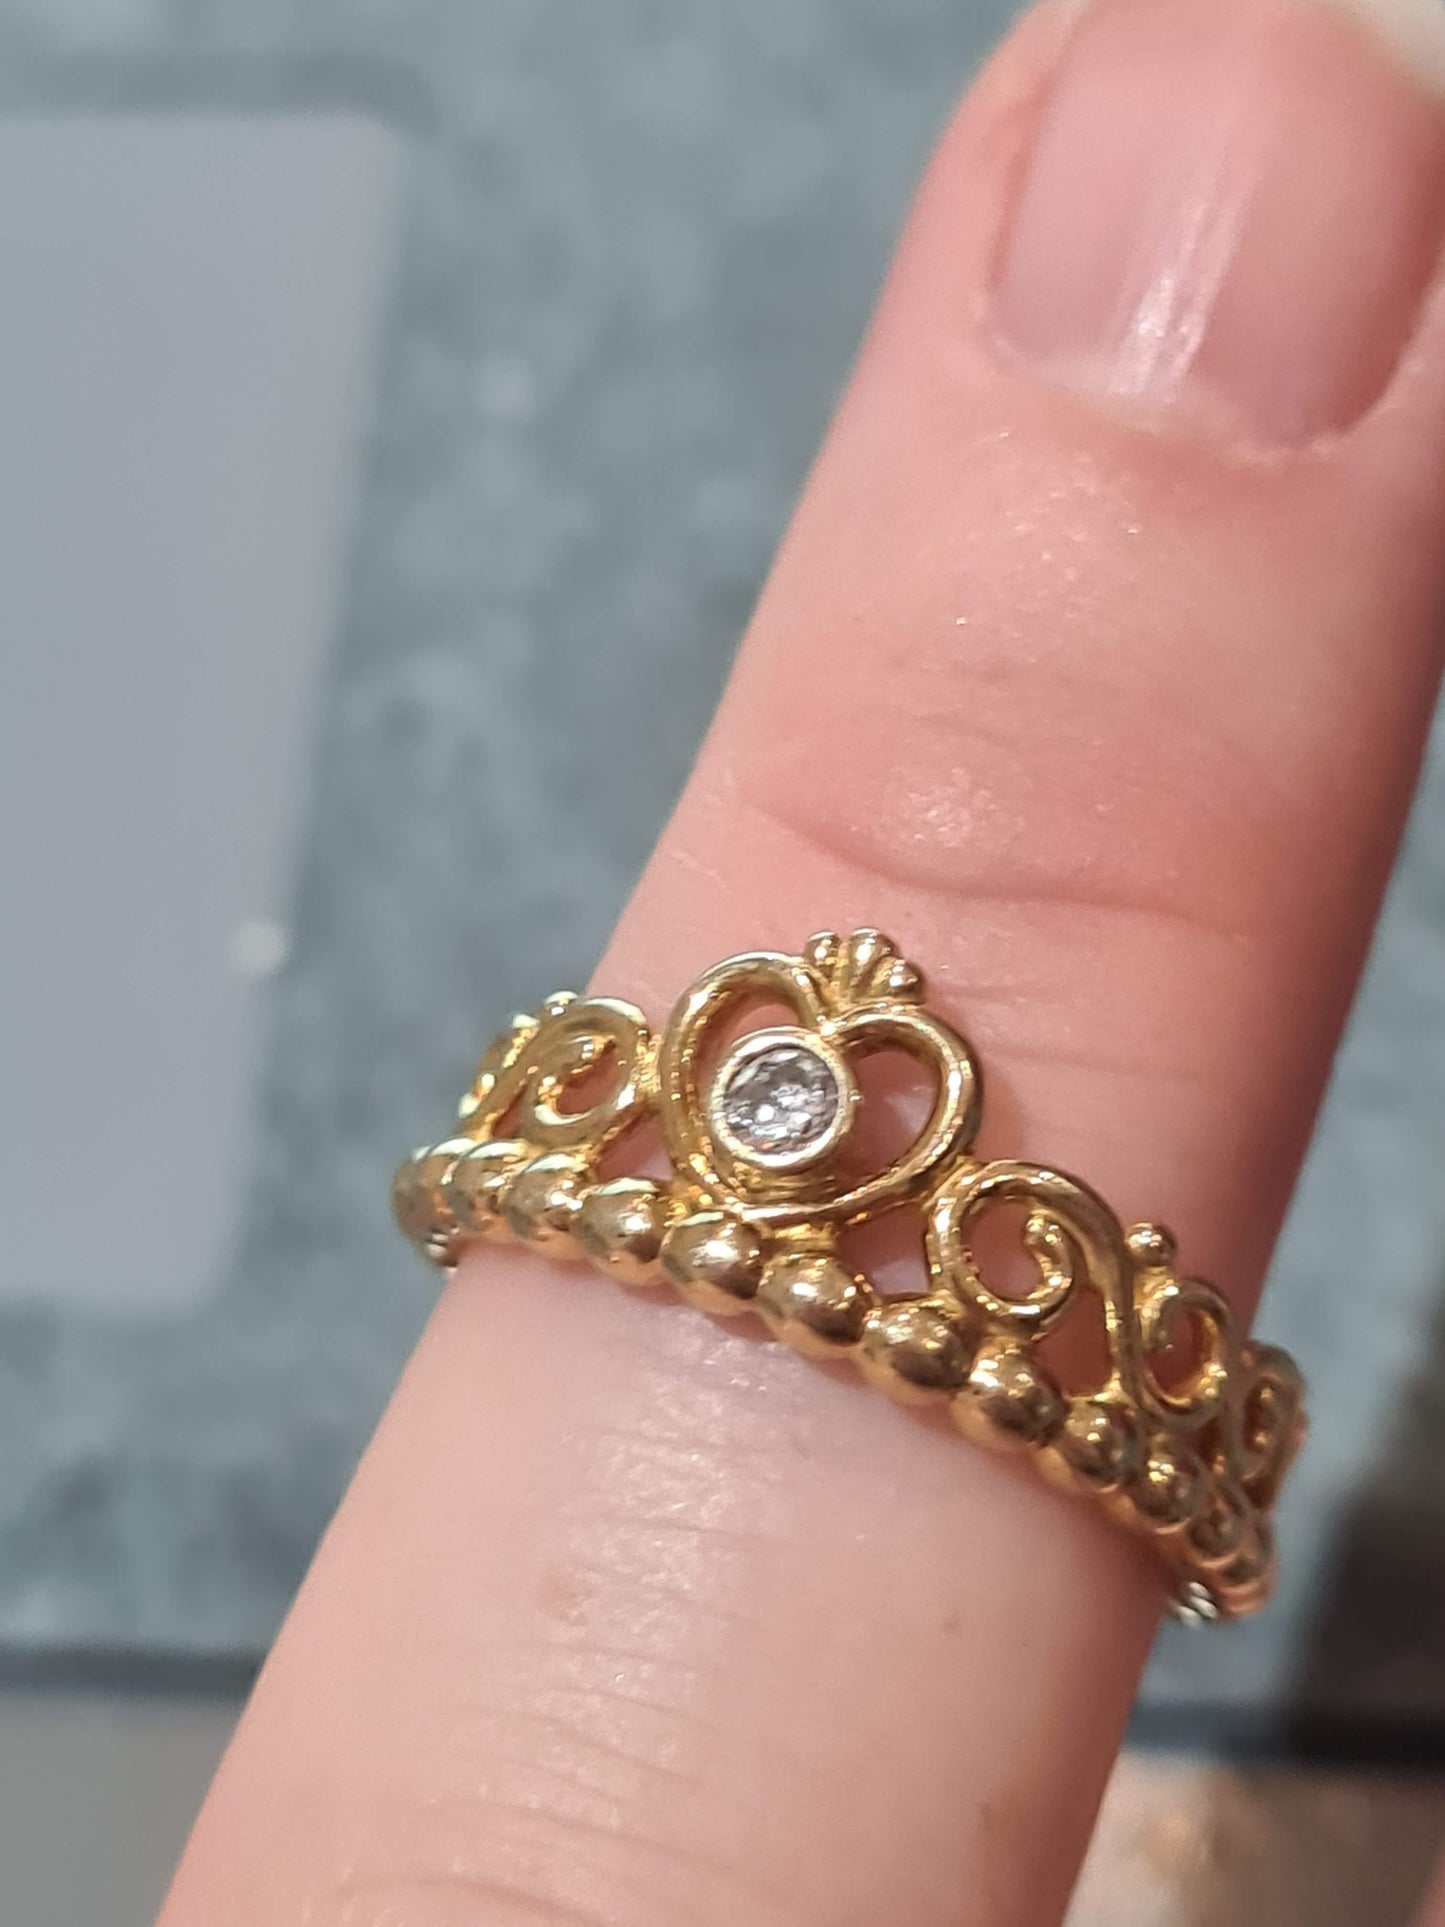 Genuine Pandora Rose Gold Princess Tiara Ring Size